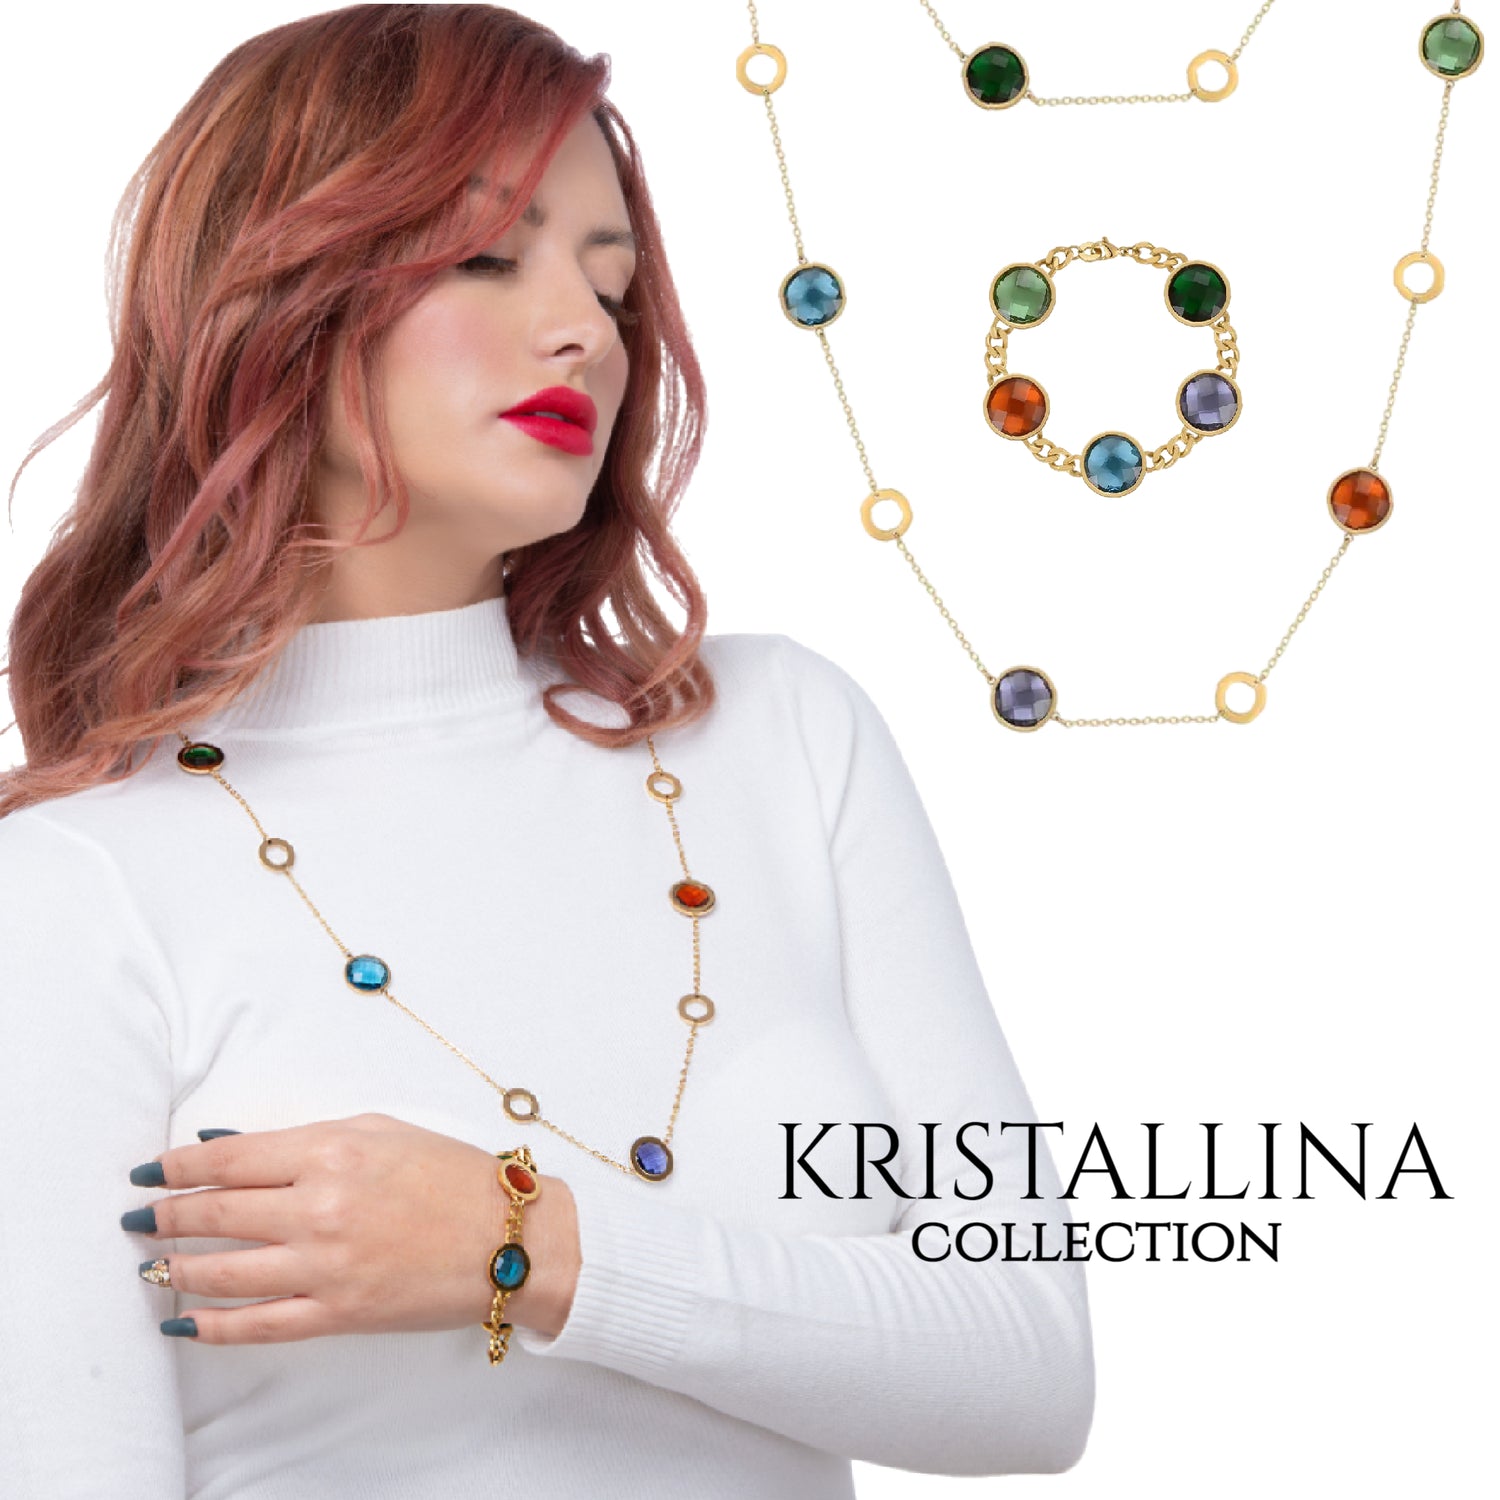 Kristallina Collection